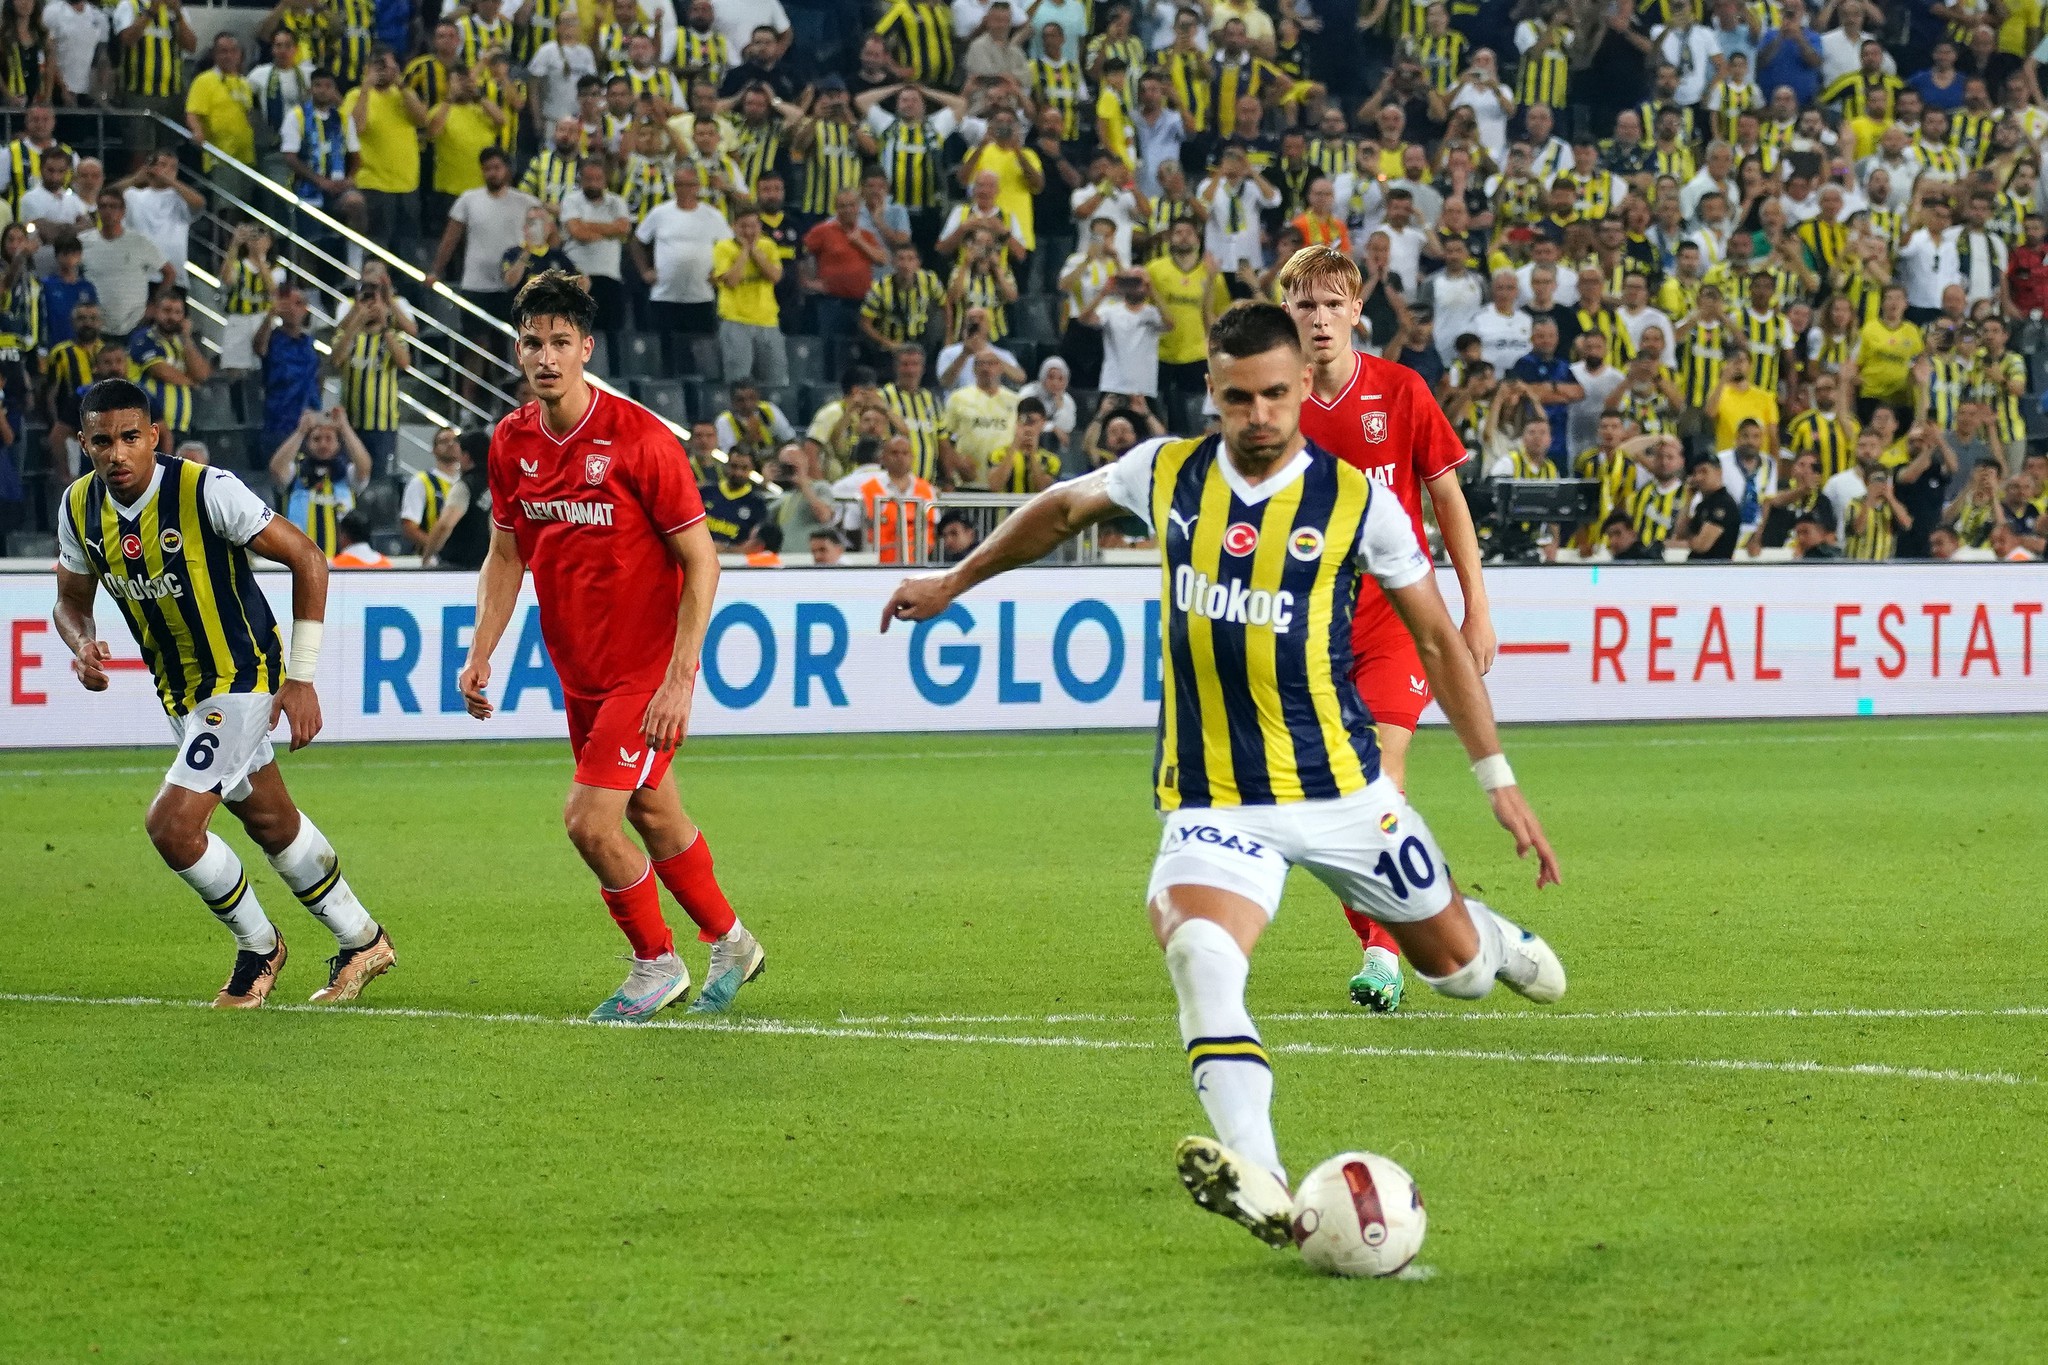 Beşiktaş ve Fenerbahçe transferde karşı karşıya! Geleceğin yıldızını kapmak için yarışıyorlar